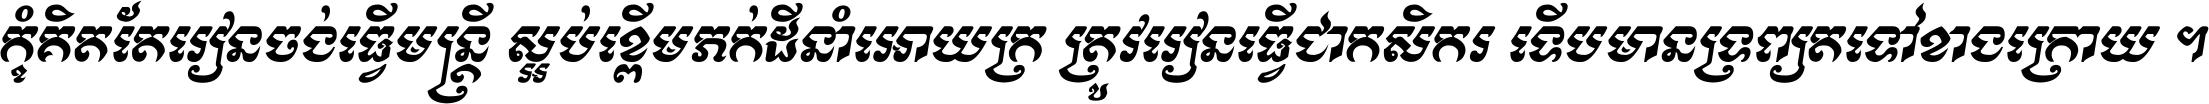 Kh Baphnom Buddha Story Italic